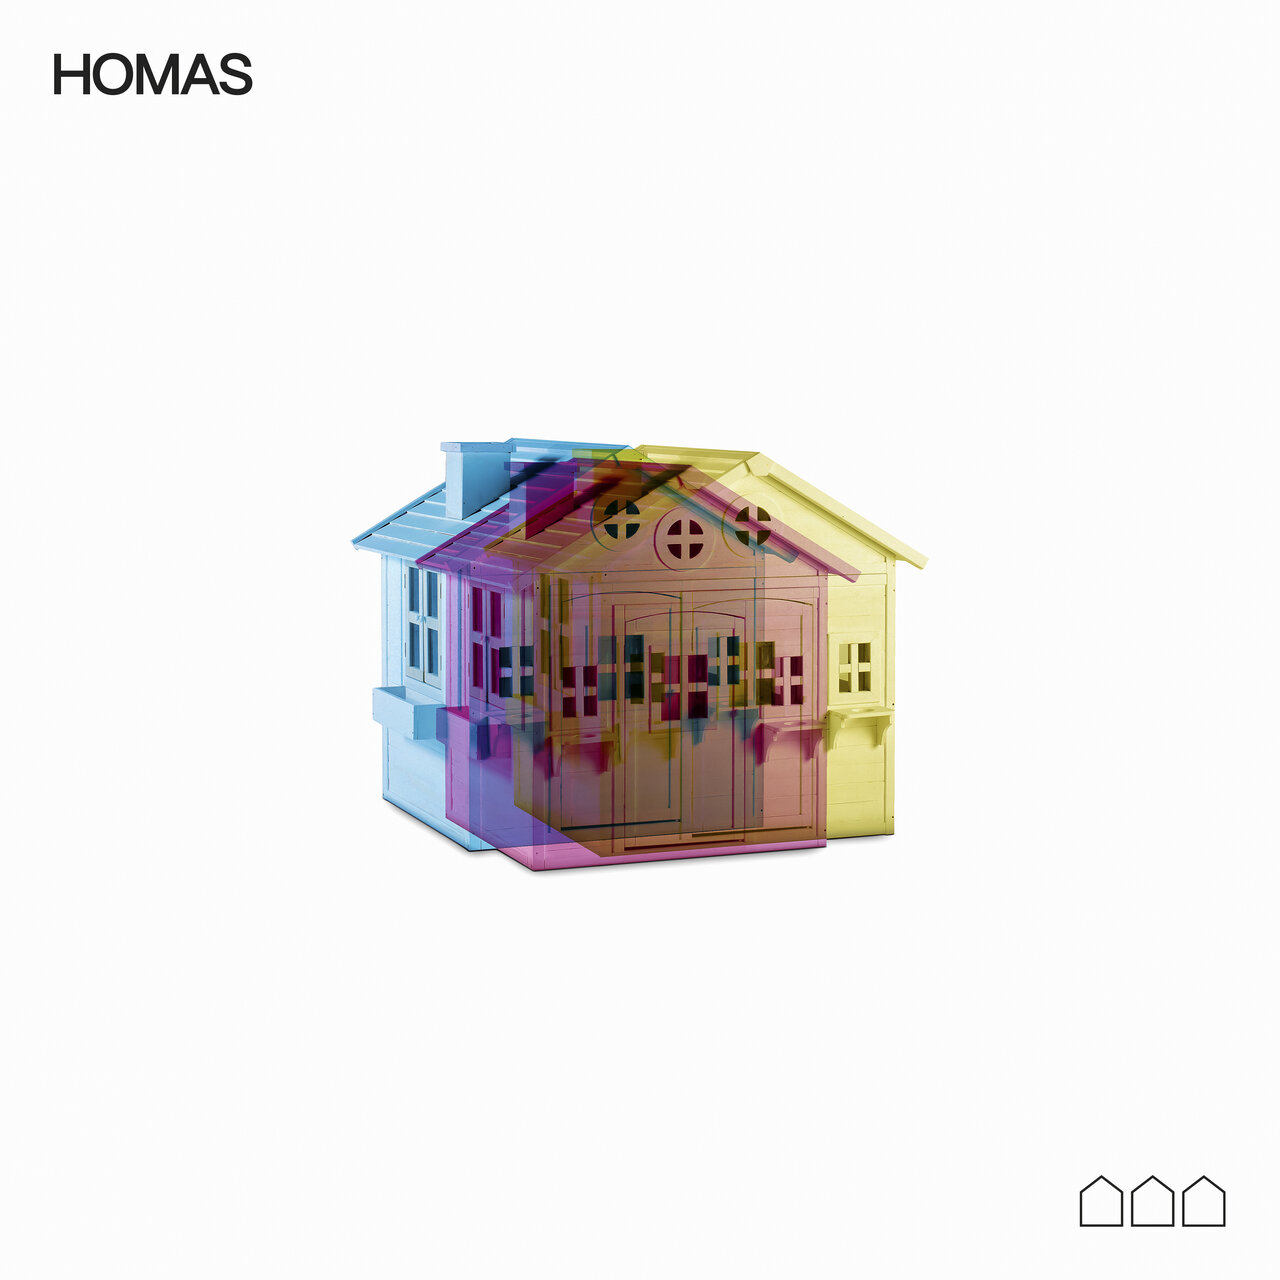 Stay Homas HOMAS cover artwork